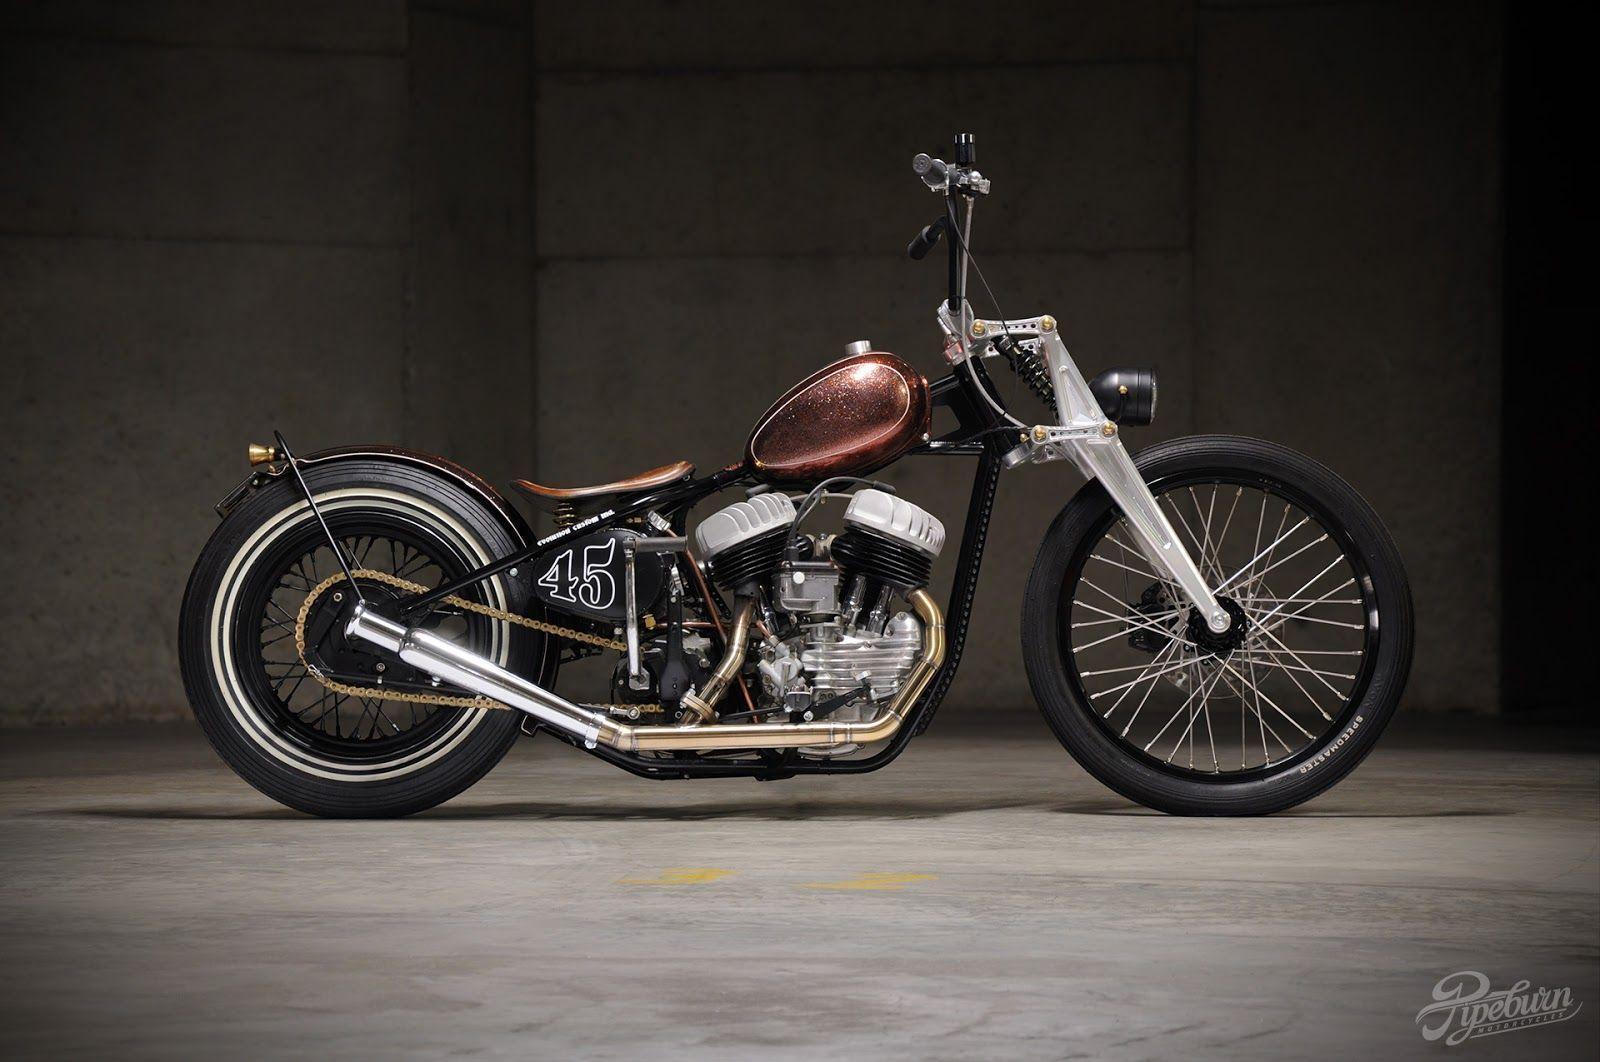 image For > Harley Davidson Bobber Wallpaper